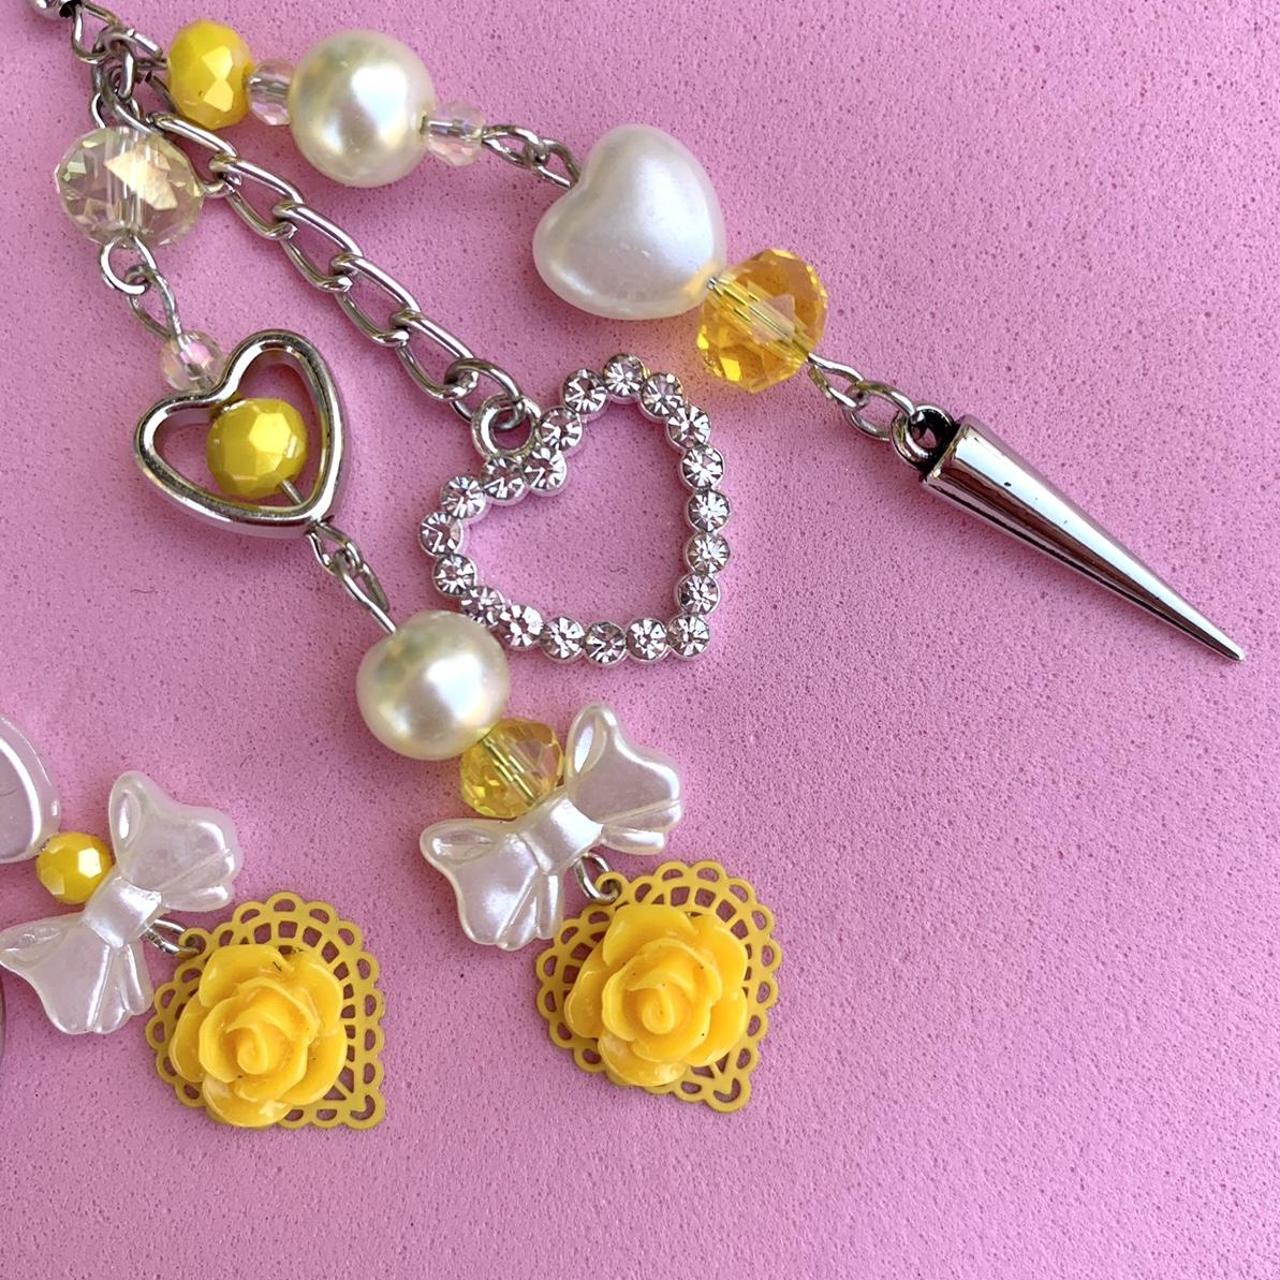 Sugarpill Women's Yellow and White Jewellery (3)